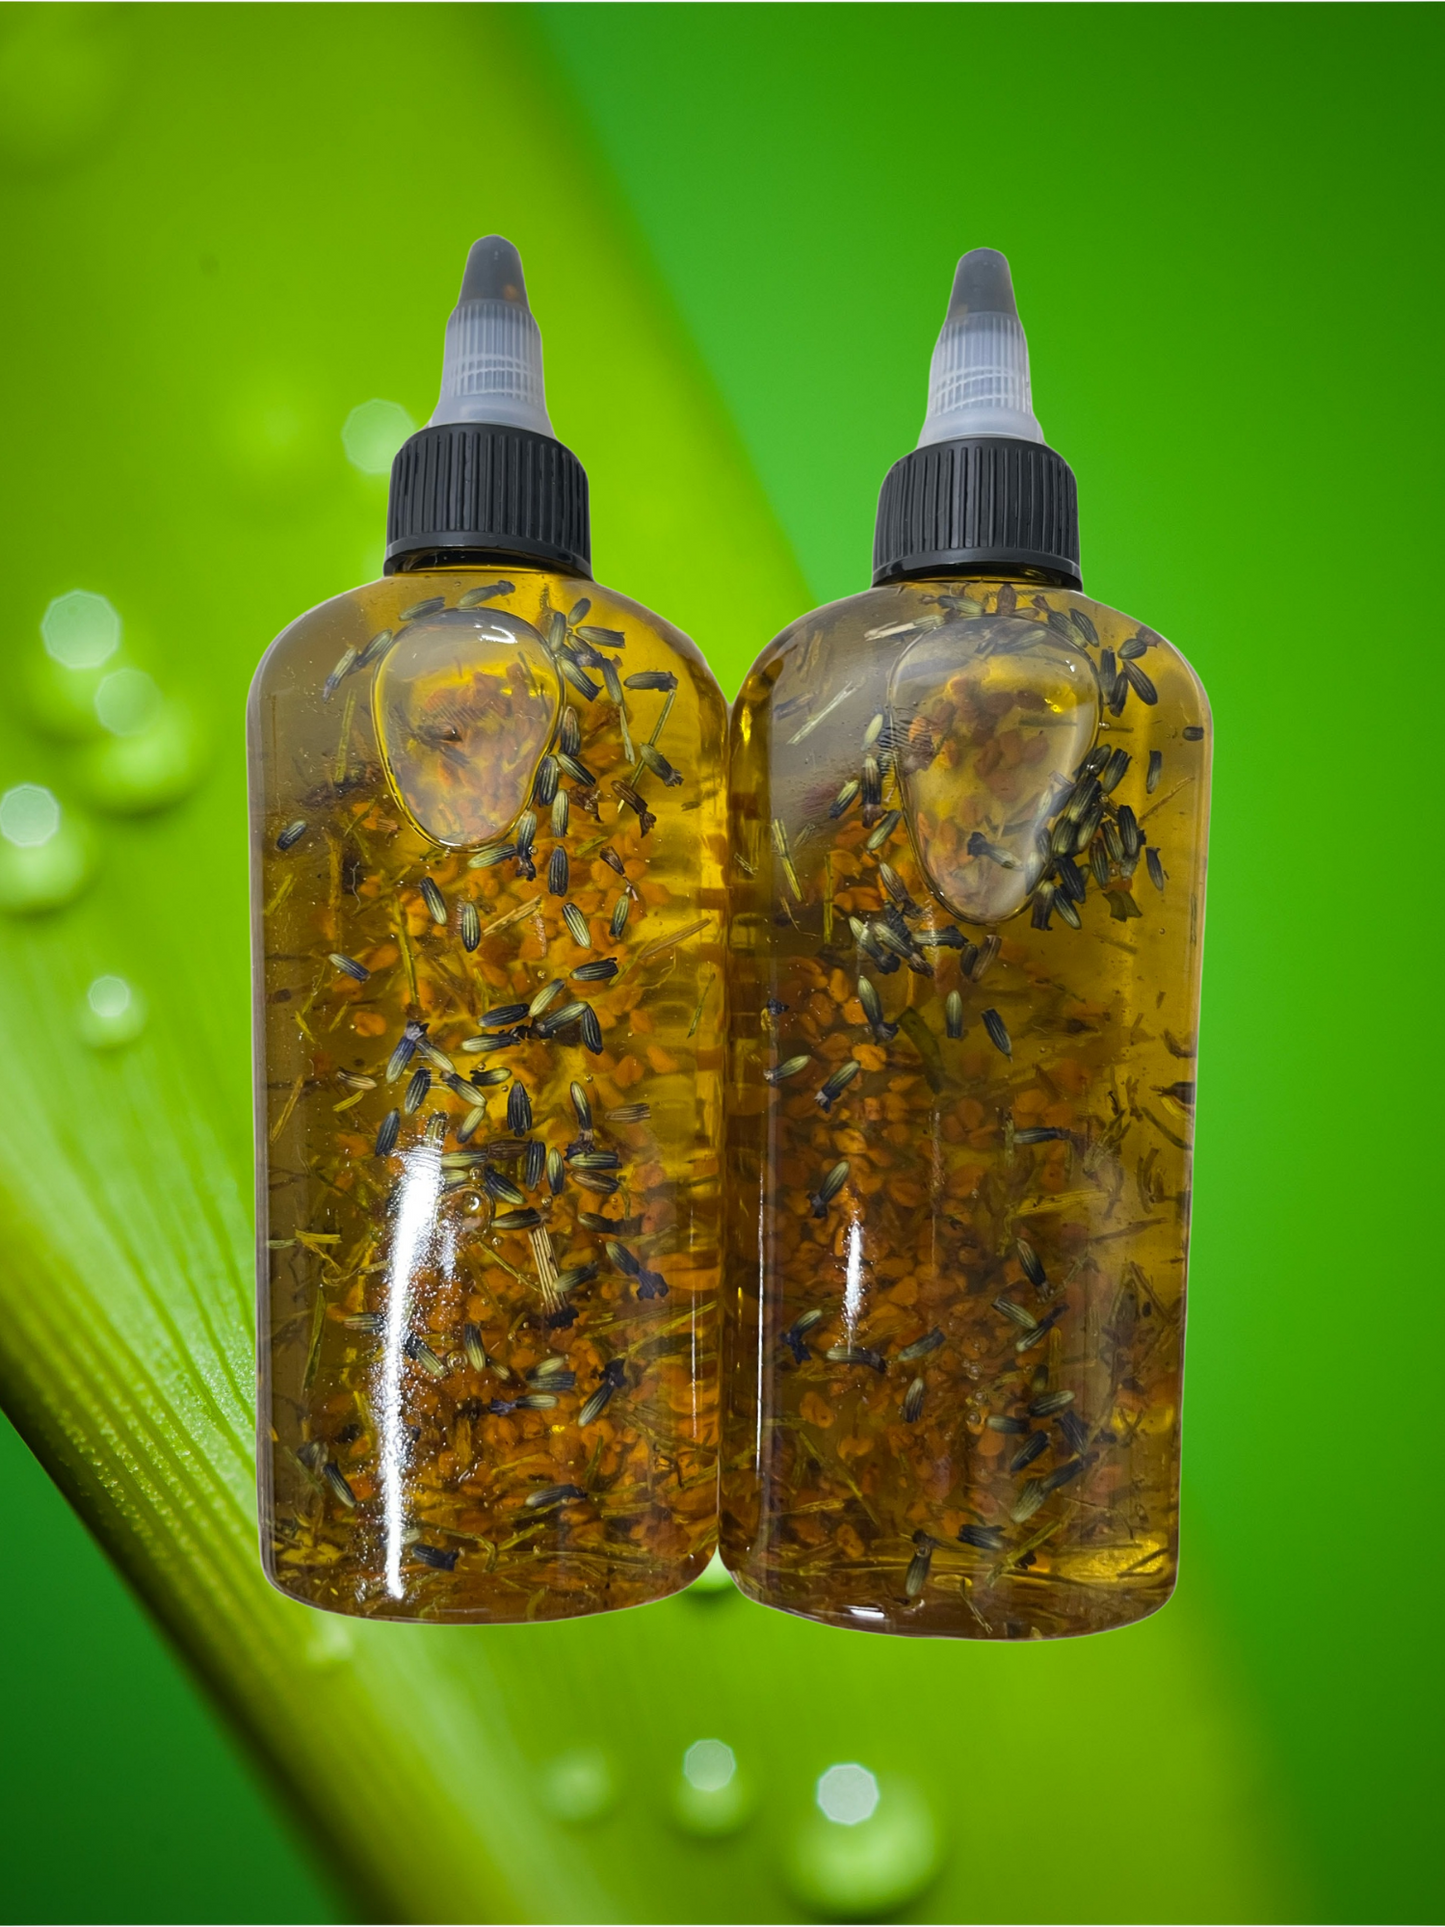 Bonafide Herbal Hair Growth Oil